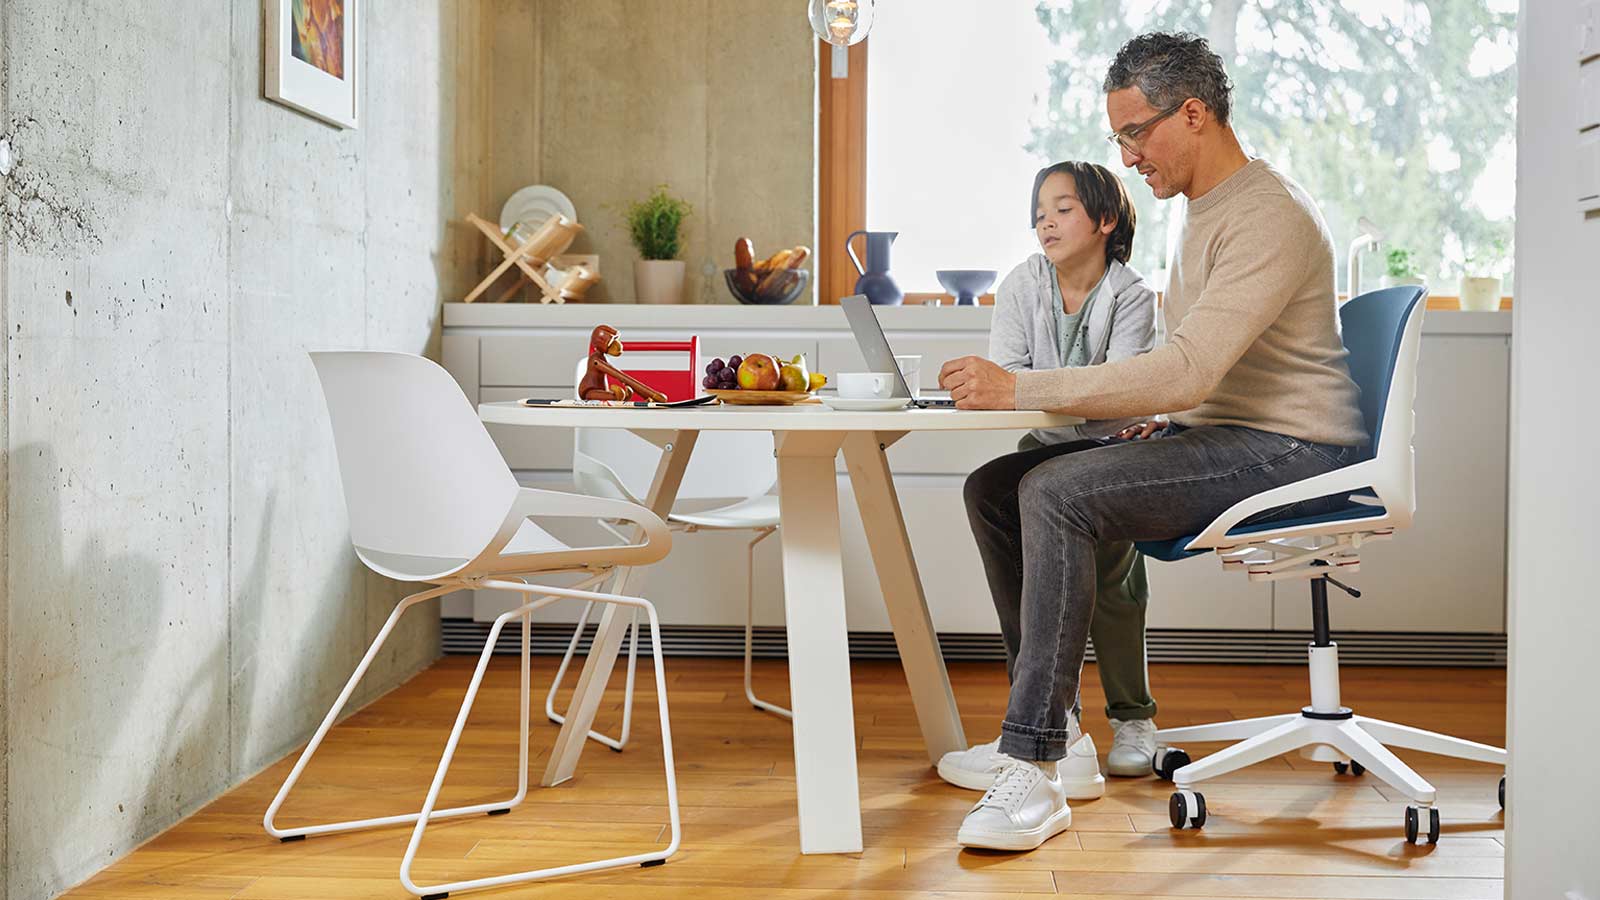 Bürostuhl Aeris Numo Task am Küchentisch mit Mann auf Stuhl und Kind weißes Gestell Std. blaugrau farbene Polster